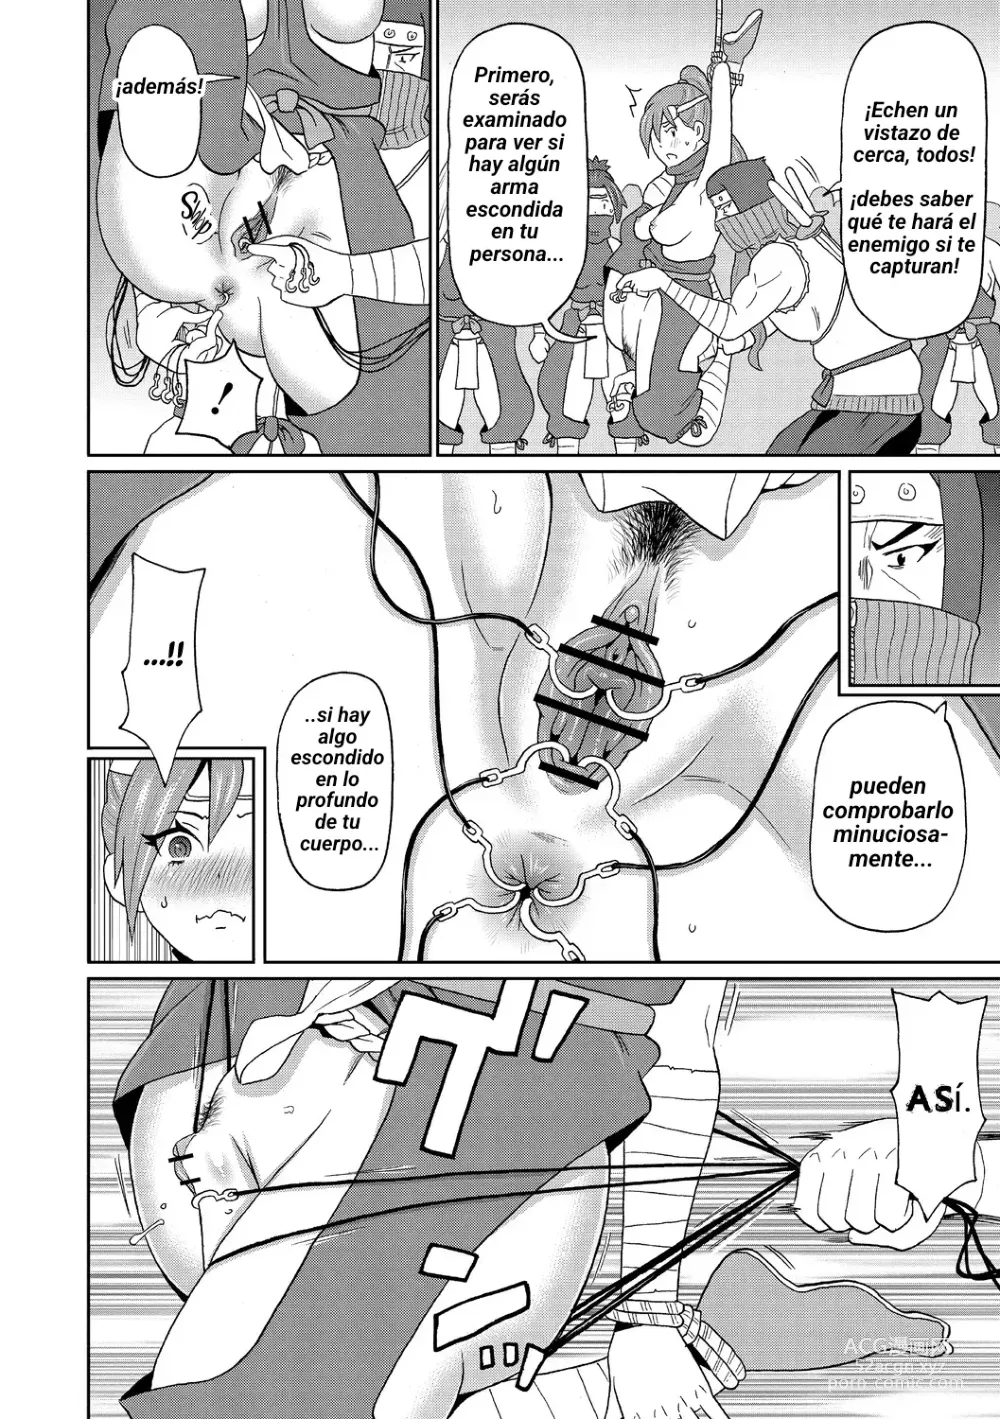 Page 8 of manga Shinmai Kunoichi Shinozaki-san.